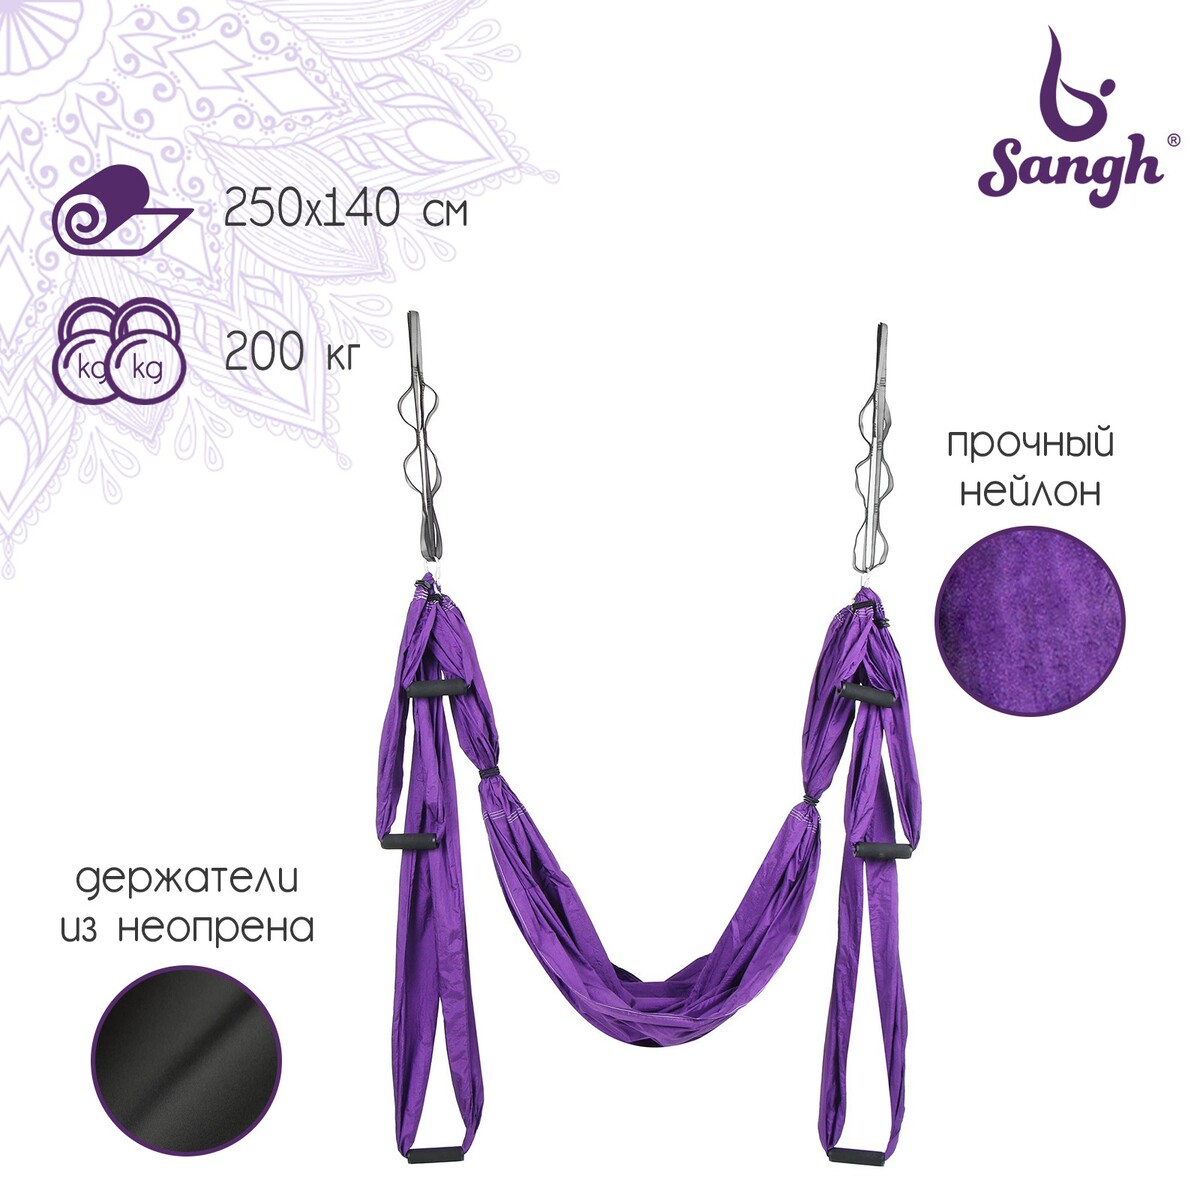 Гамак для йоги sangh, 250×140 см, цвет фиолетовый йога блок sportex полумягкий из вспененного эва a25569 be100 2 фиолетовый